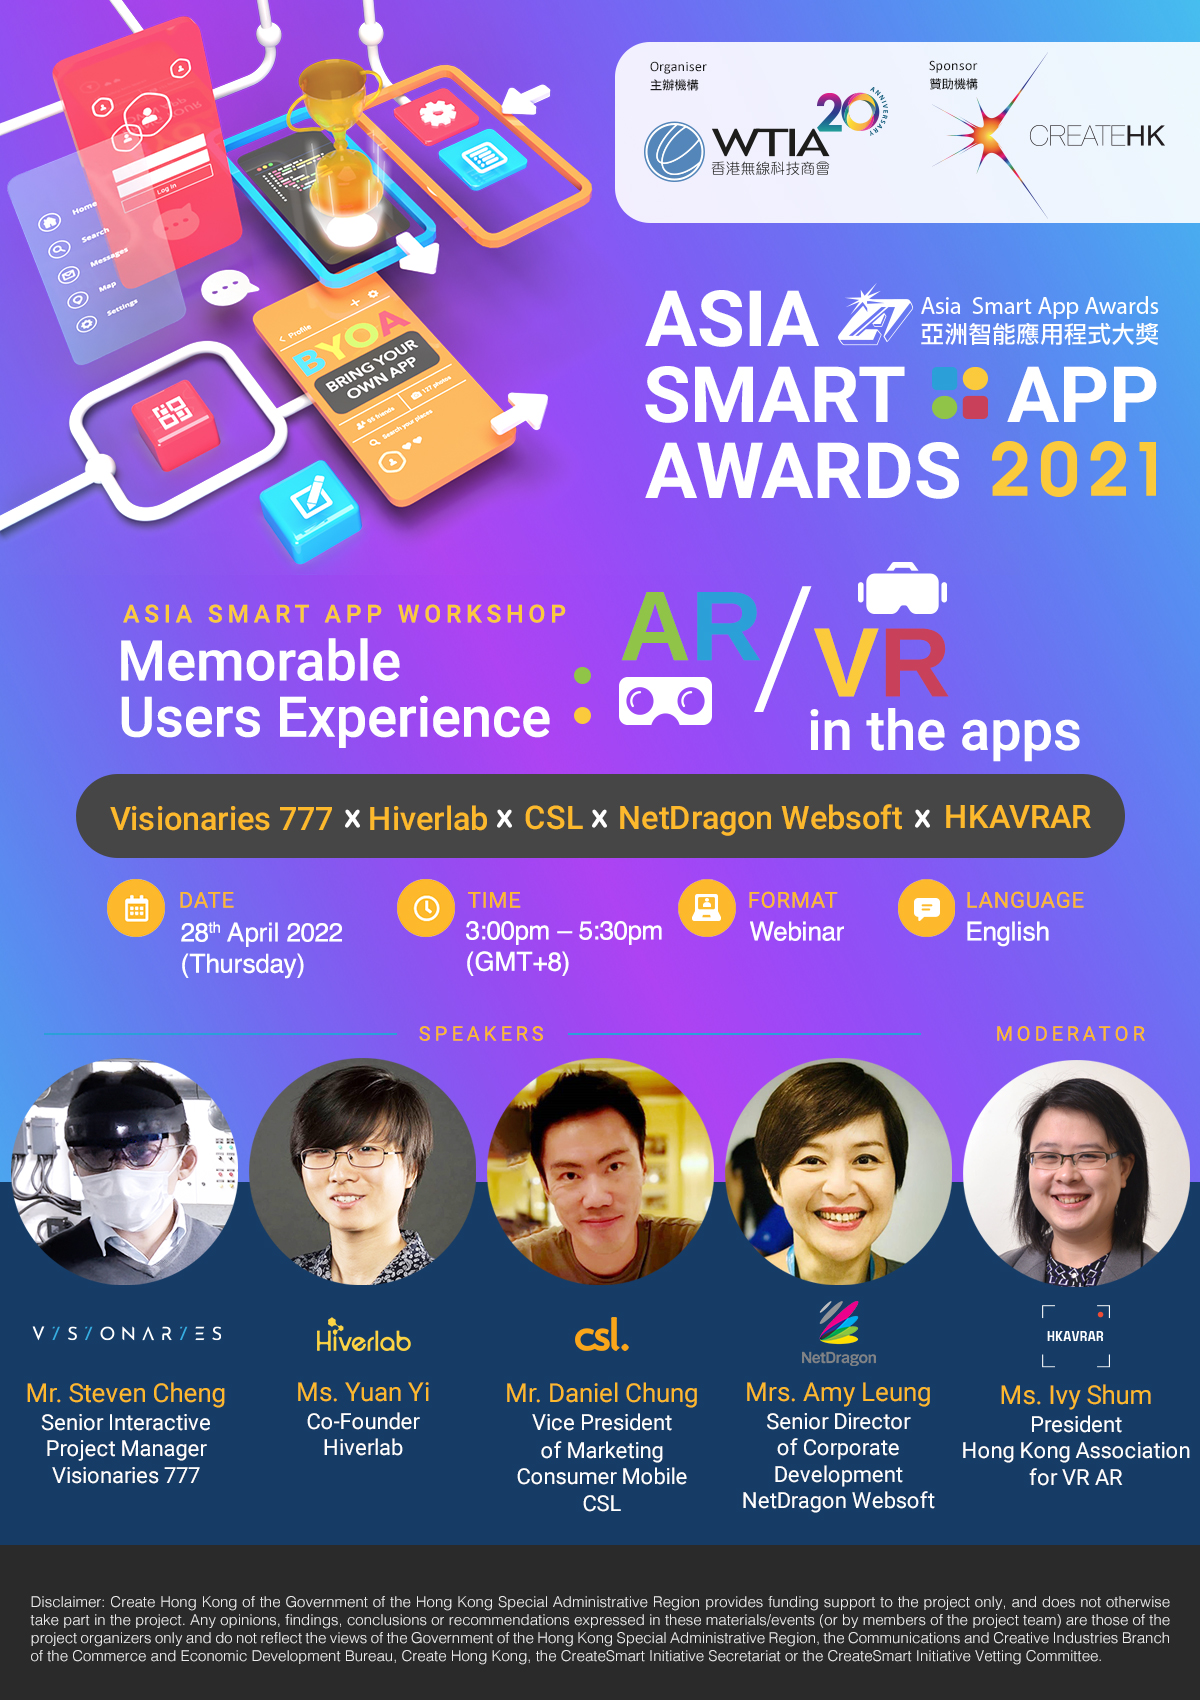 「亞洲智能應用程式大獎」報名截止